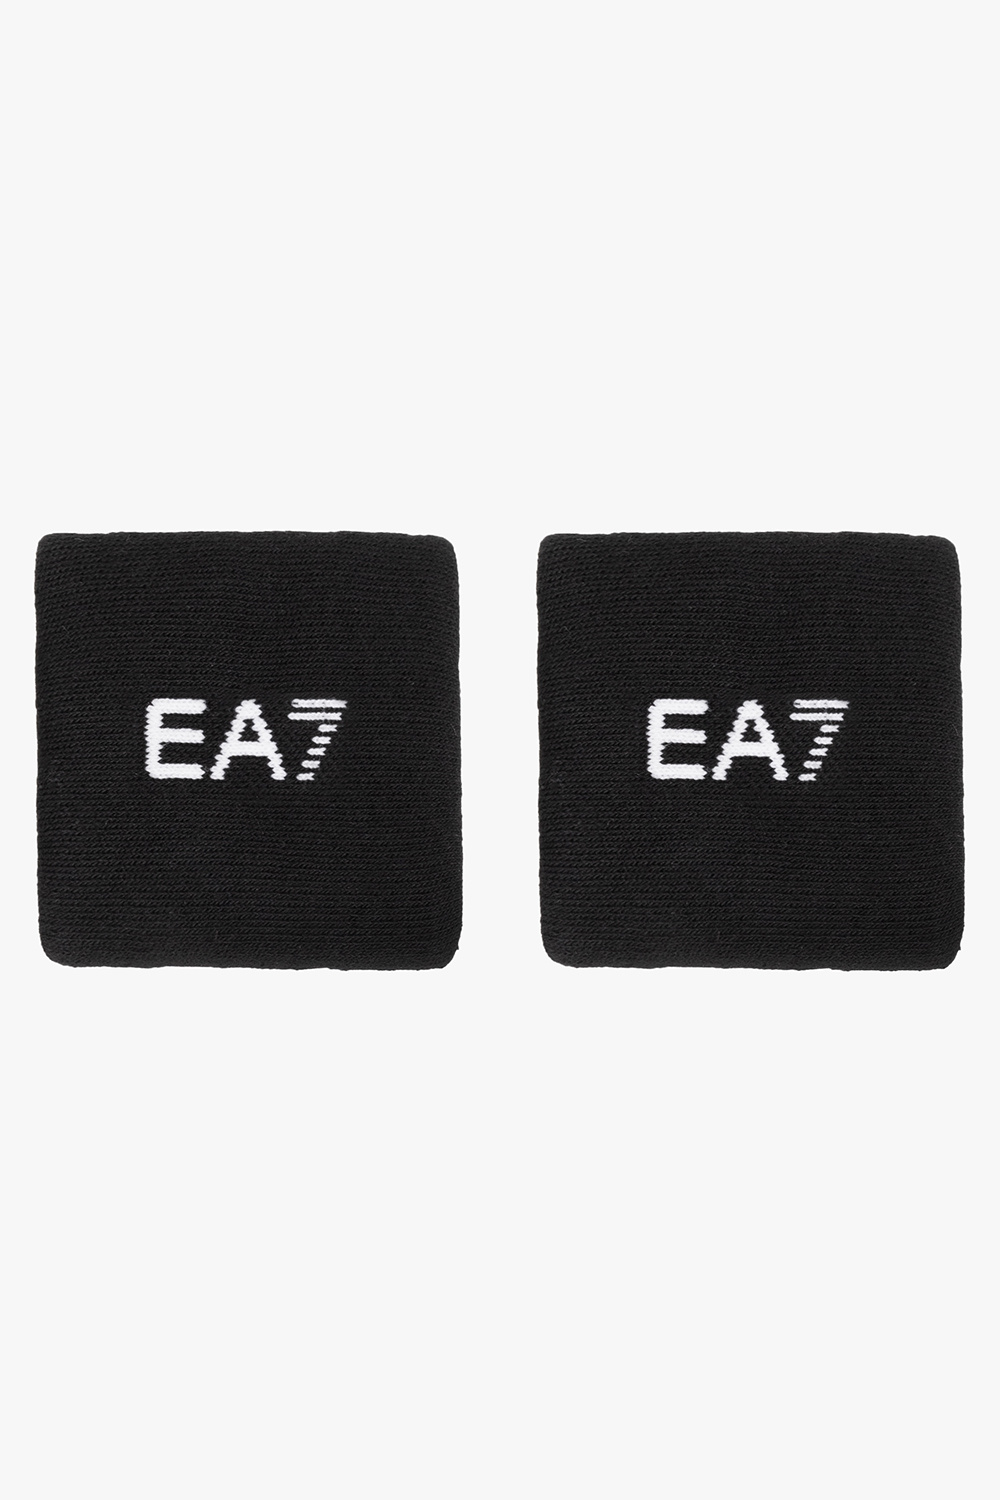 EA7 Emporio Armani Wristbands